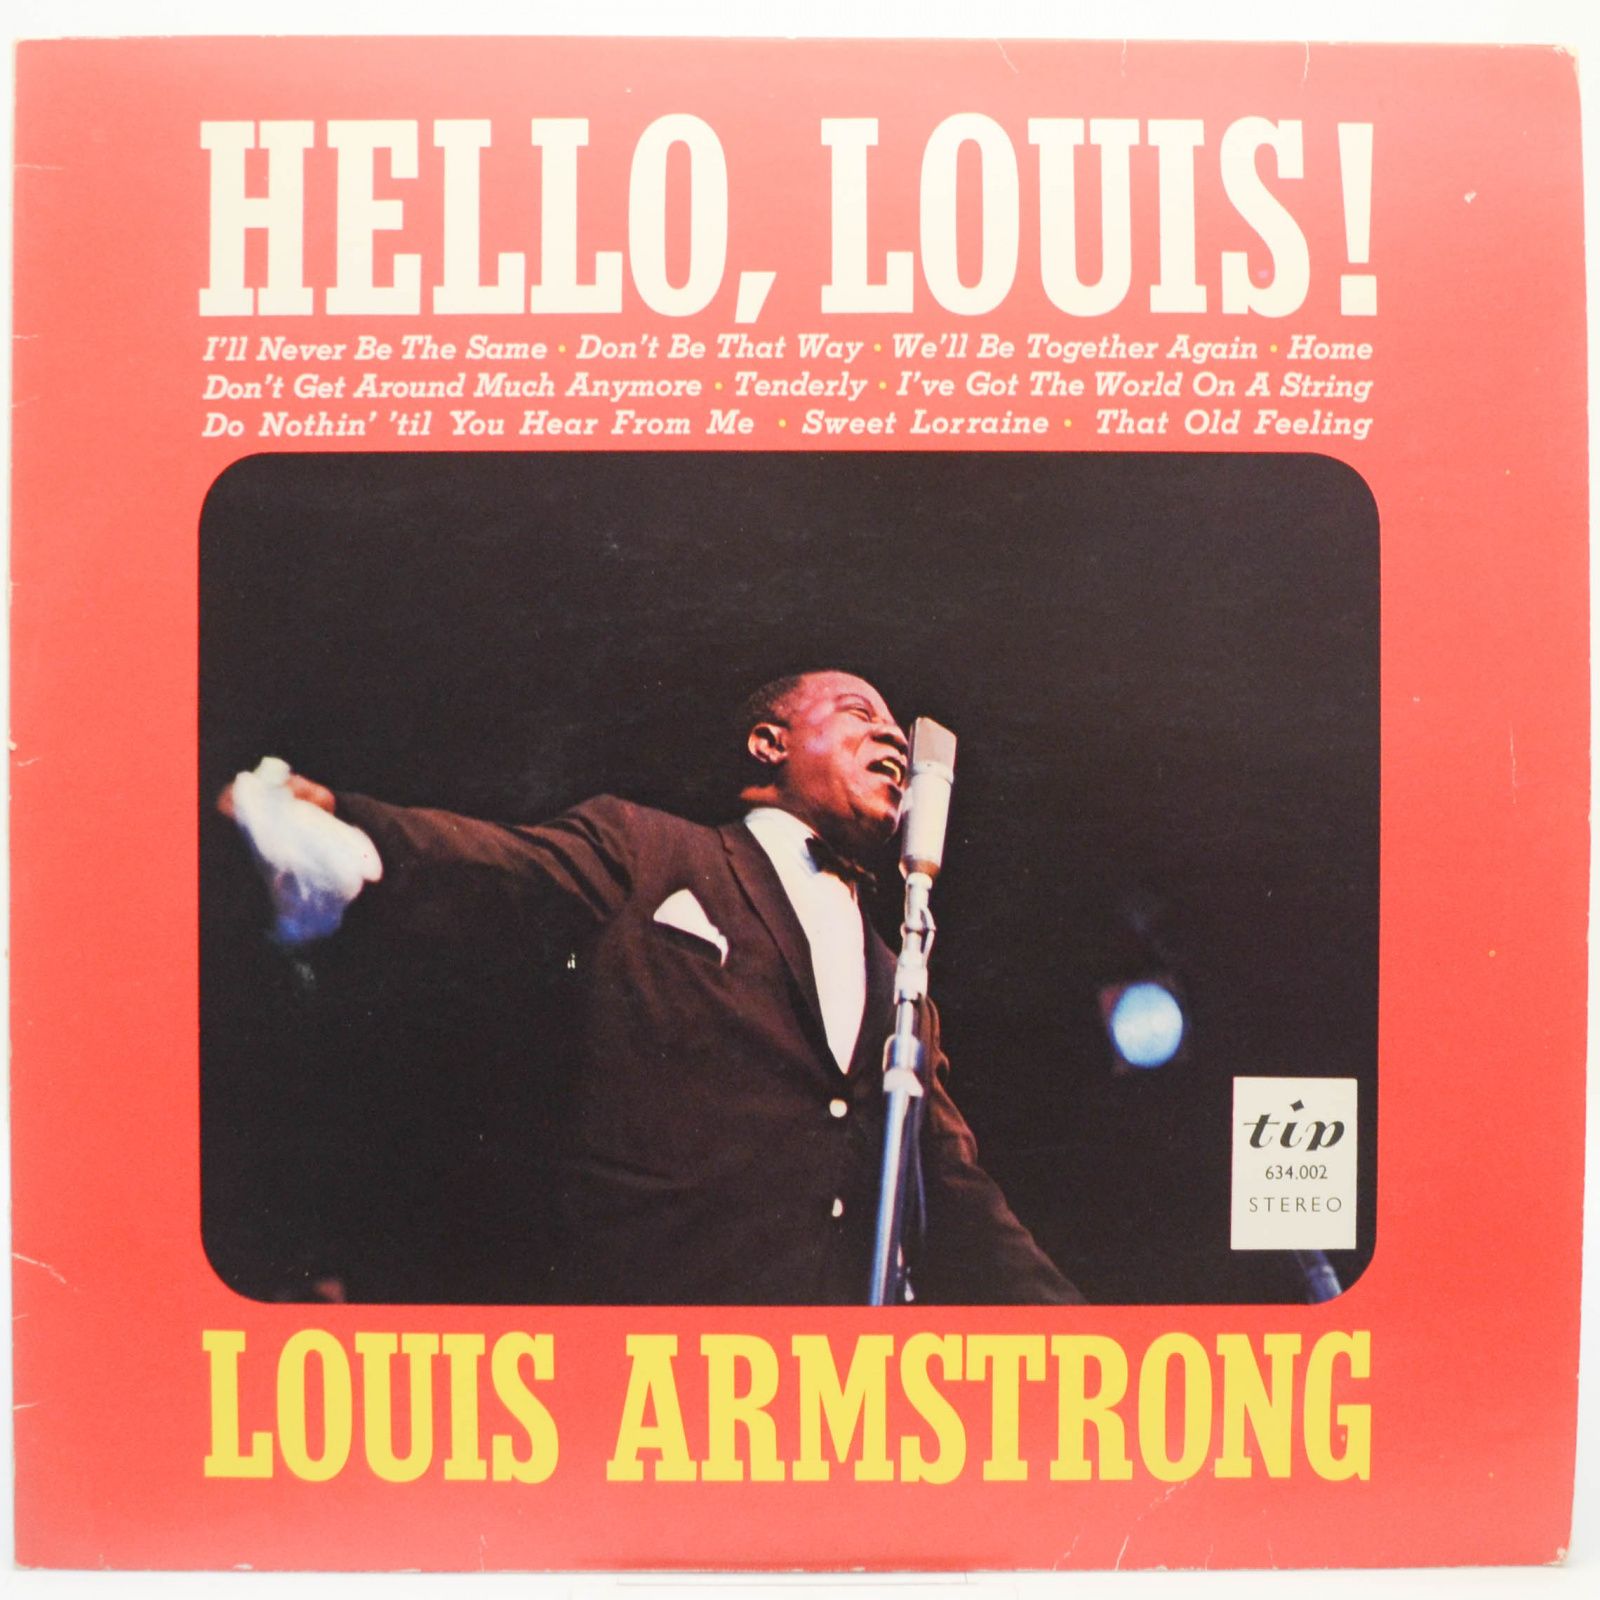 Louis Armstrong — Hello, Louis!, 1969